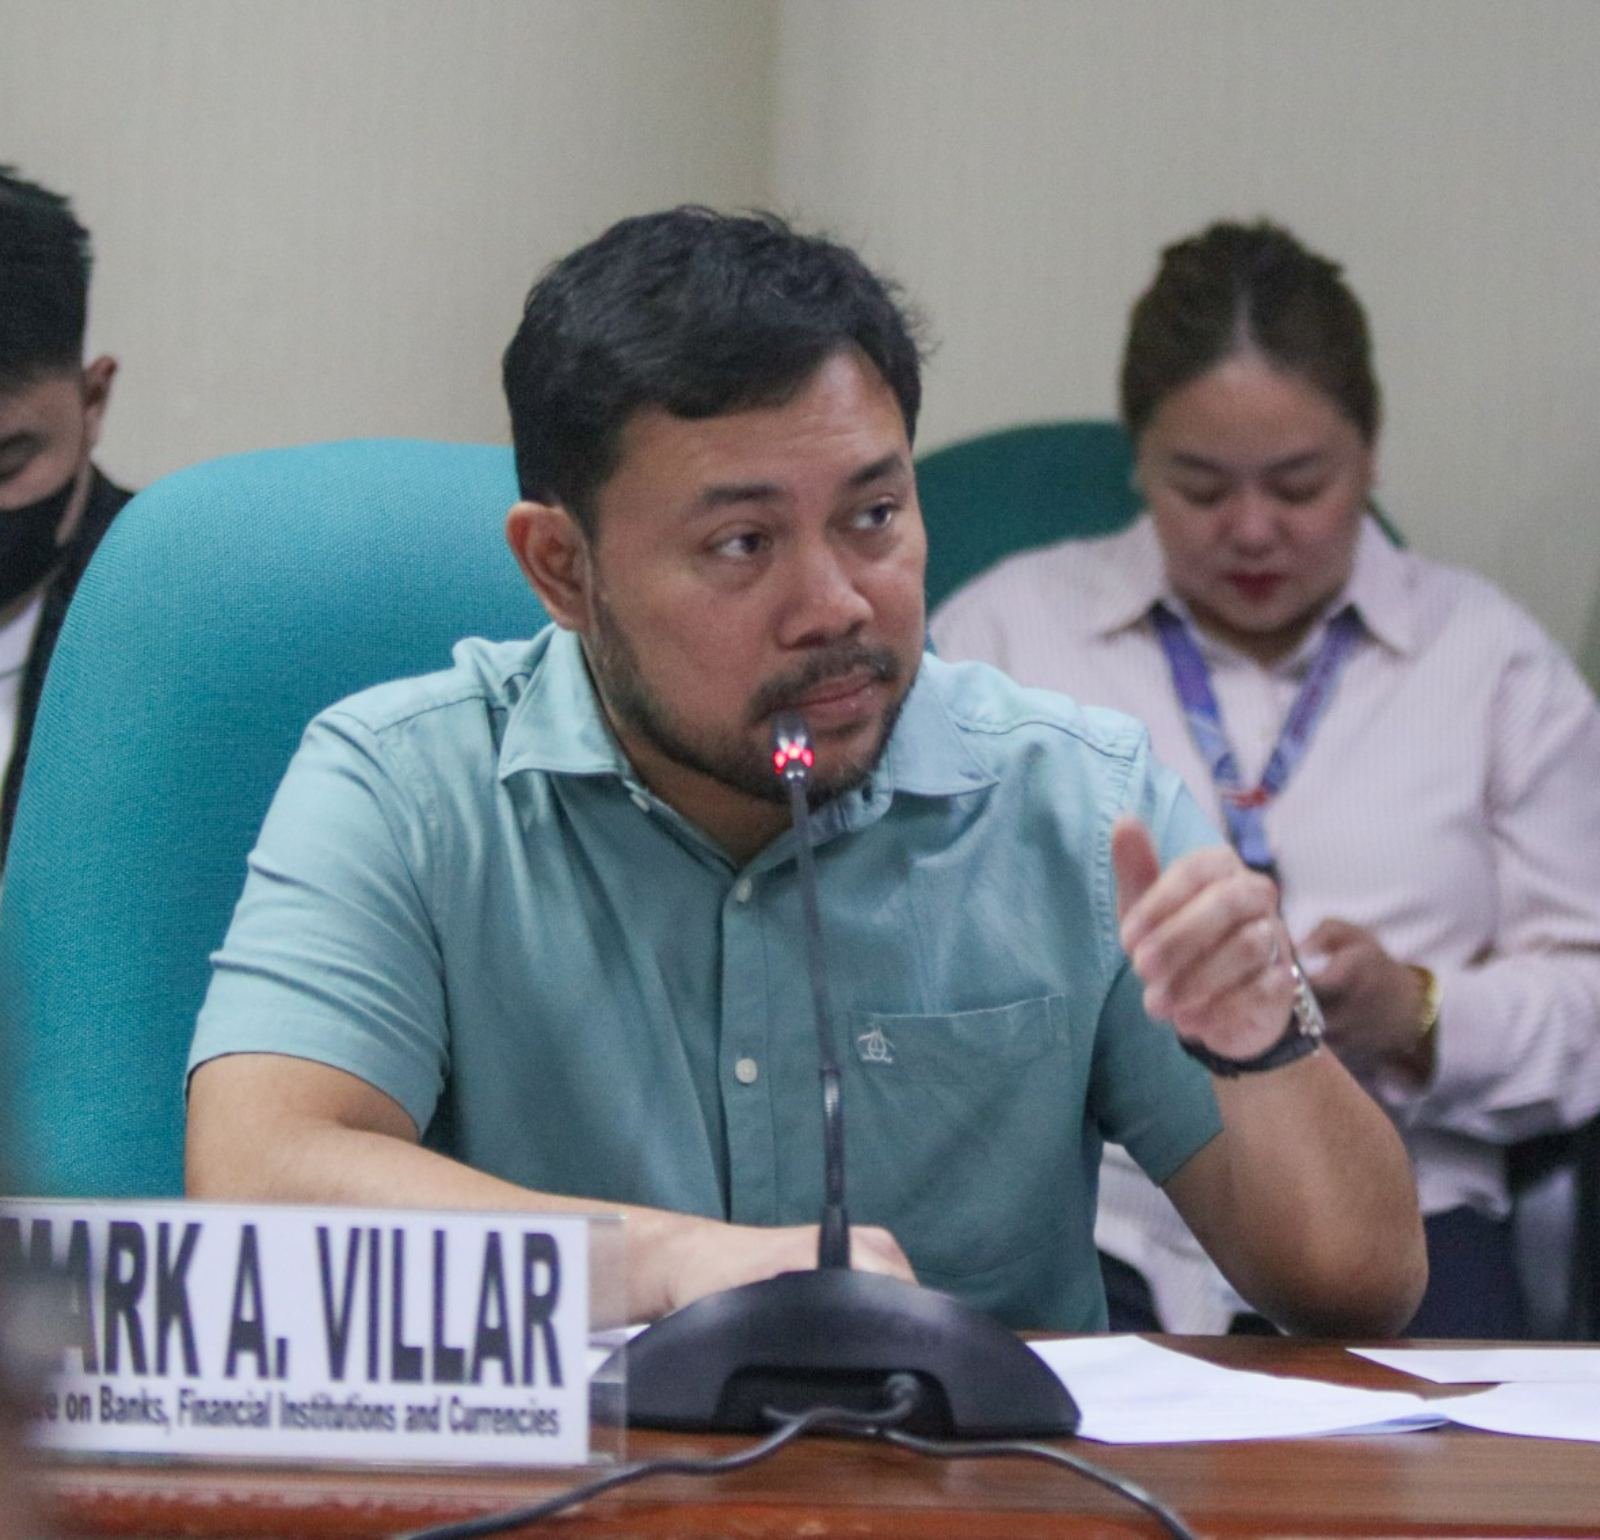 Senator Mark Villar has filed a bill pushing for the establishment of war veterans